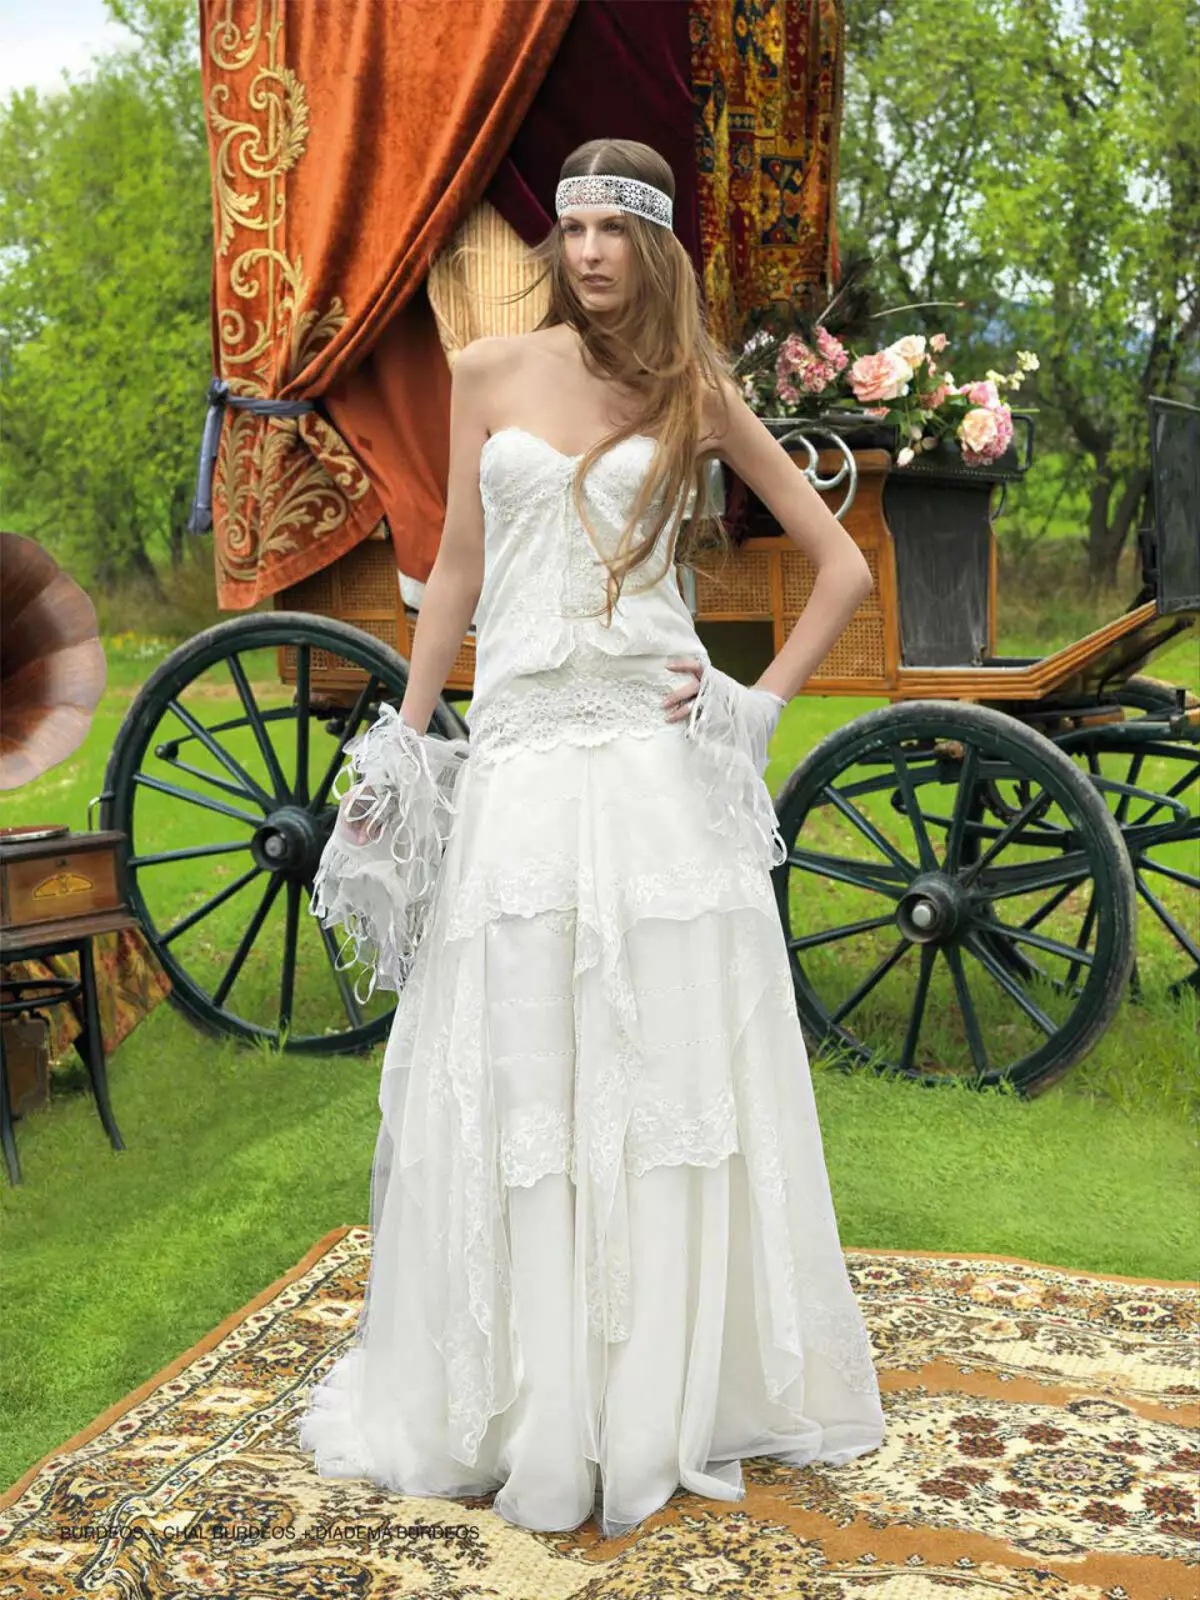 Gaun pengantin dengan gaya tsigan bocho